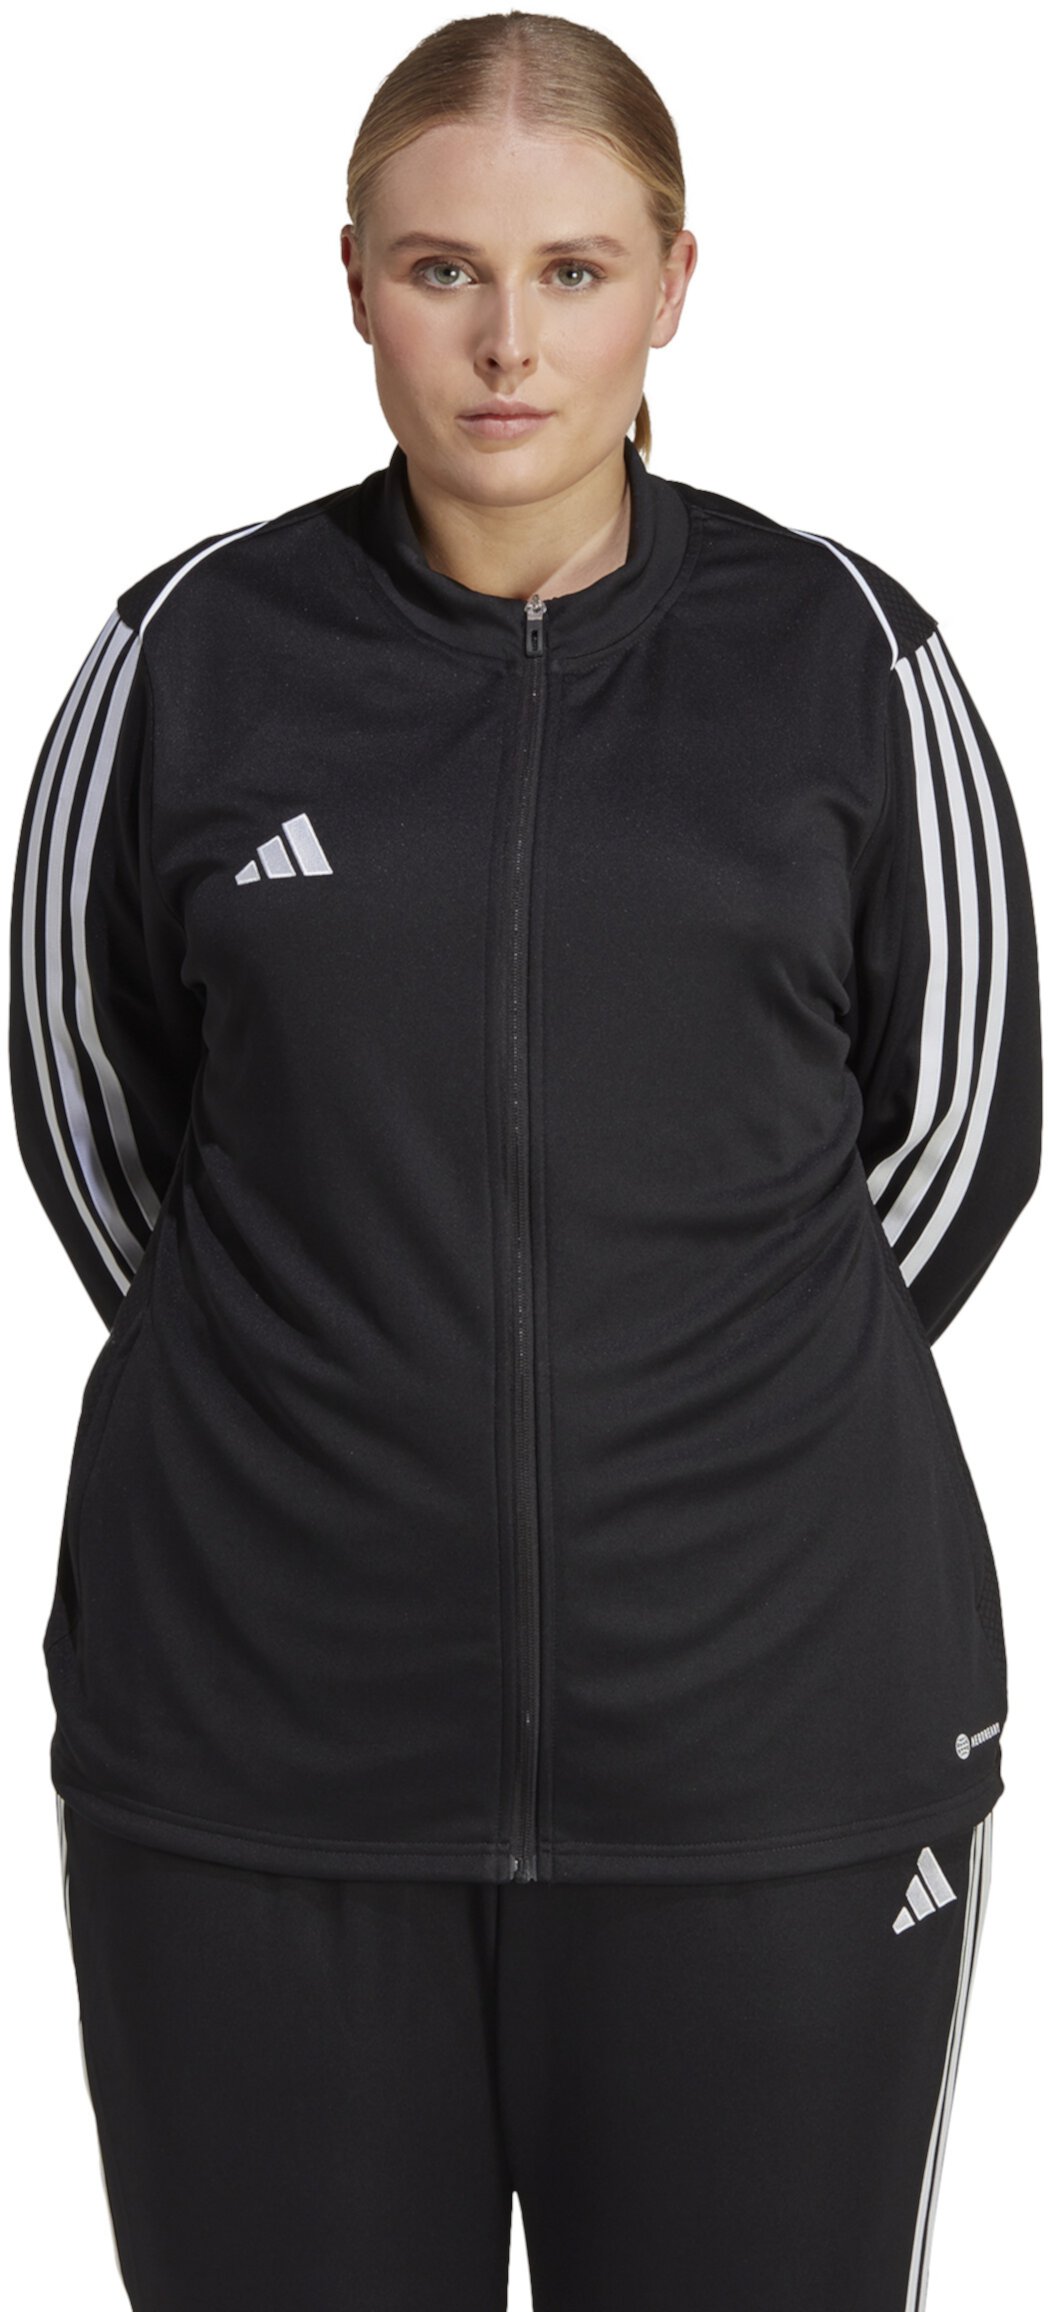 Тренировочная куртка Tiro 23 League больших размеров Adidas